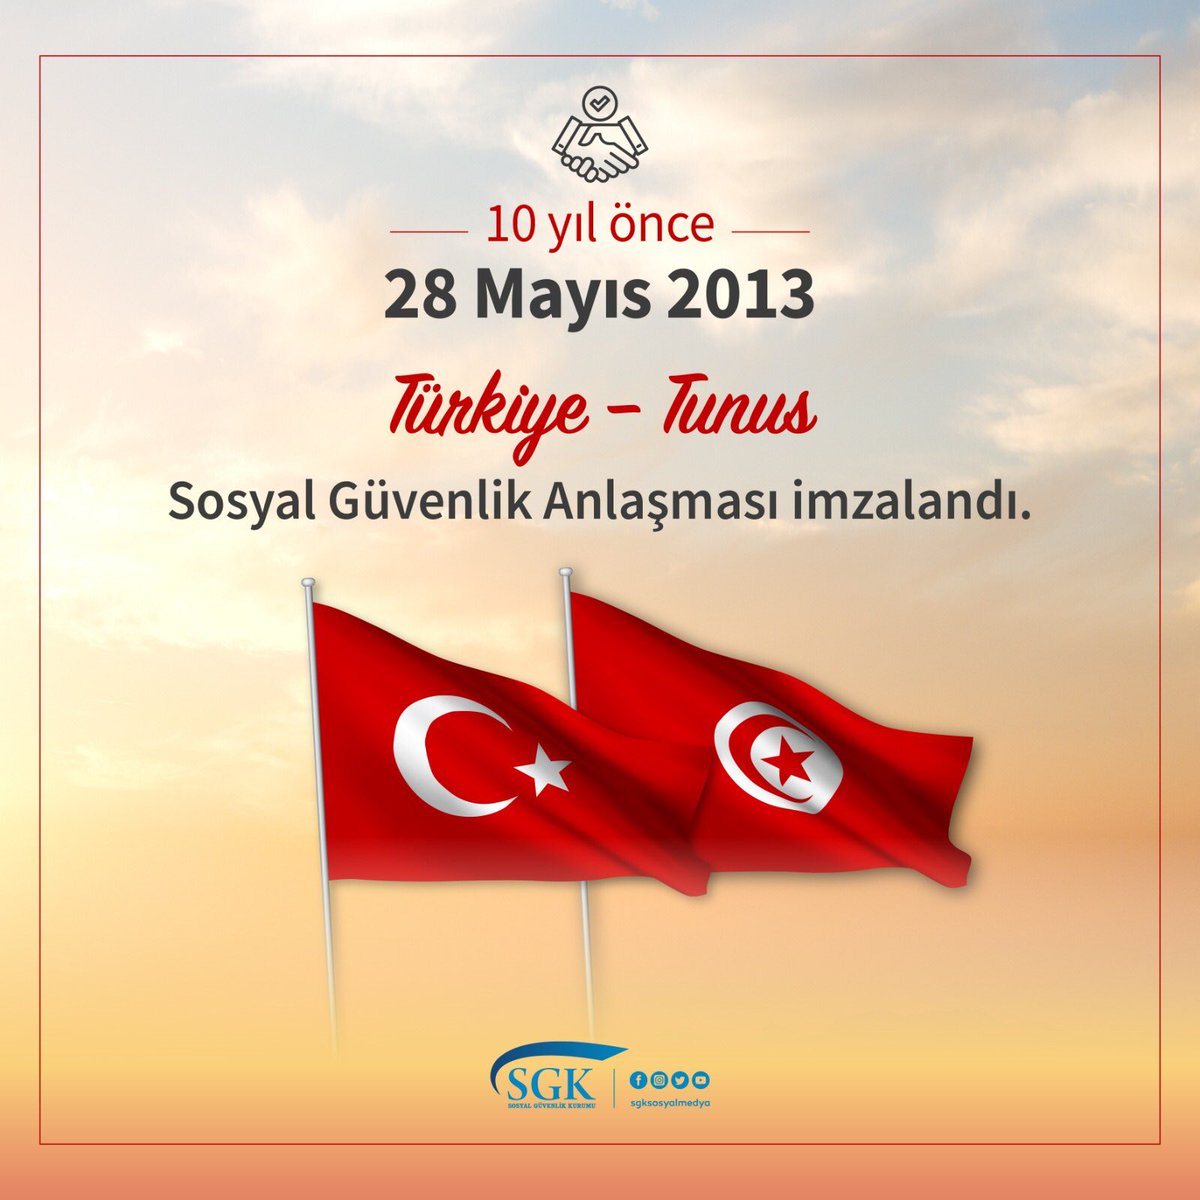 #Türkiye ve #Tunus vatandaşlarının #sosyalgüvenlik haklarının korunması ve güvence altına alınabilmesi amacıyla 10 yıl önce bugün Sosyal Güvenlik Anlaşması imzalandı. 🇹🇷 🇹🇳